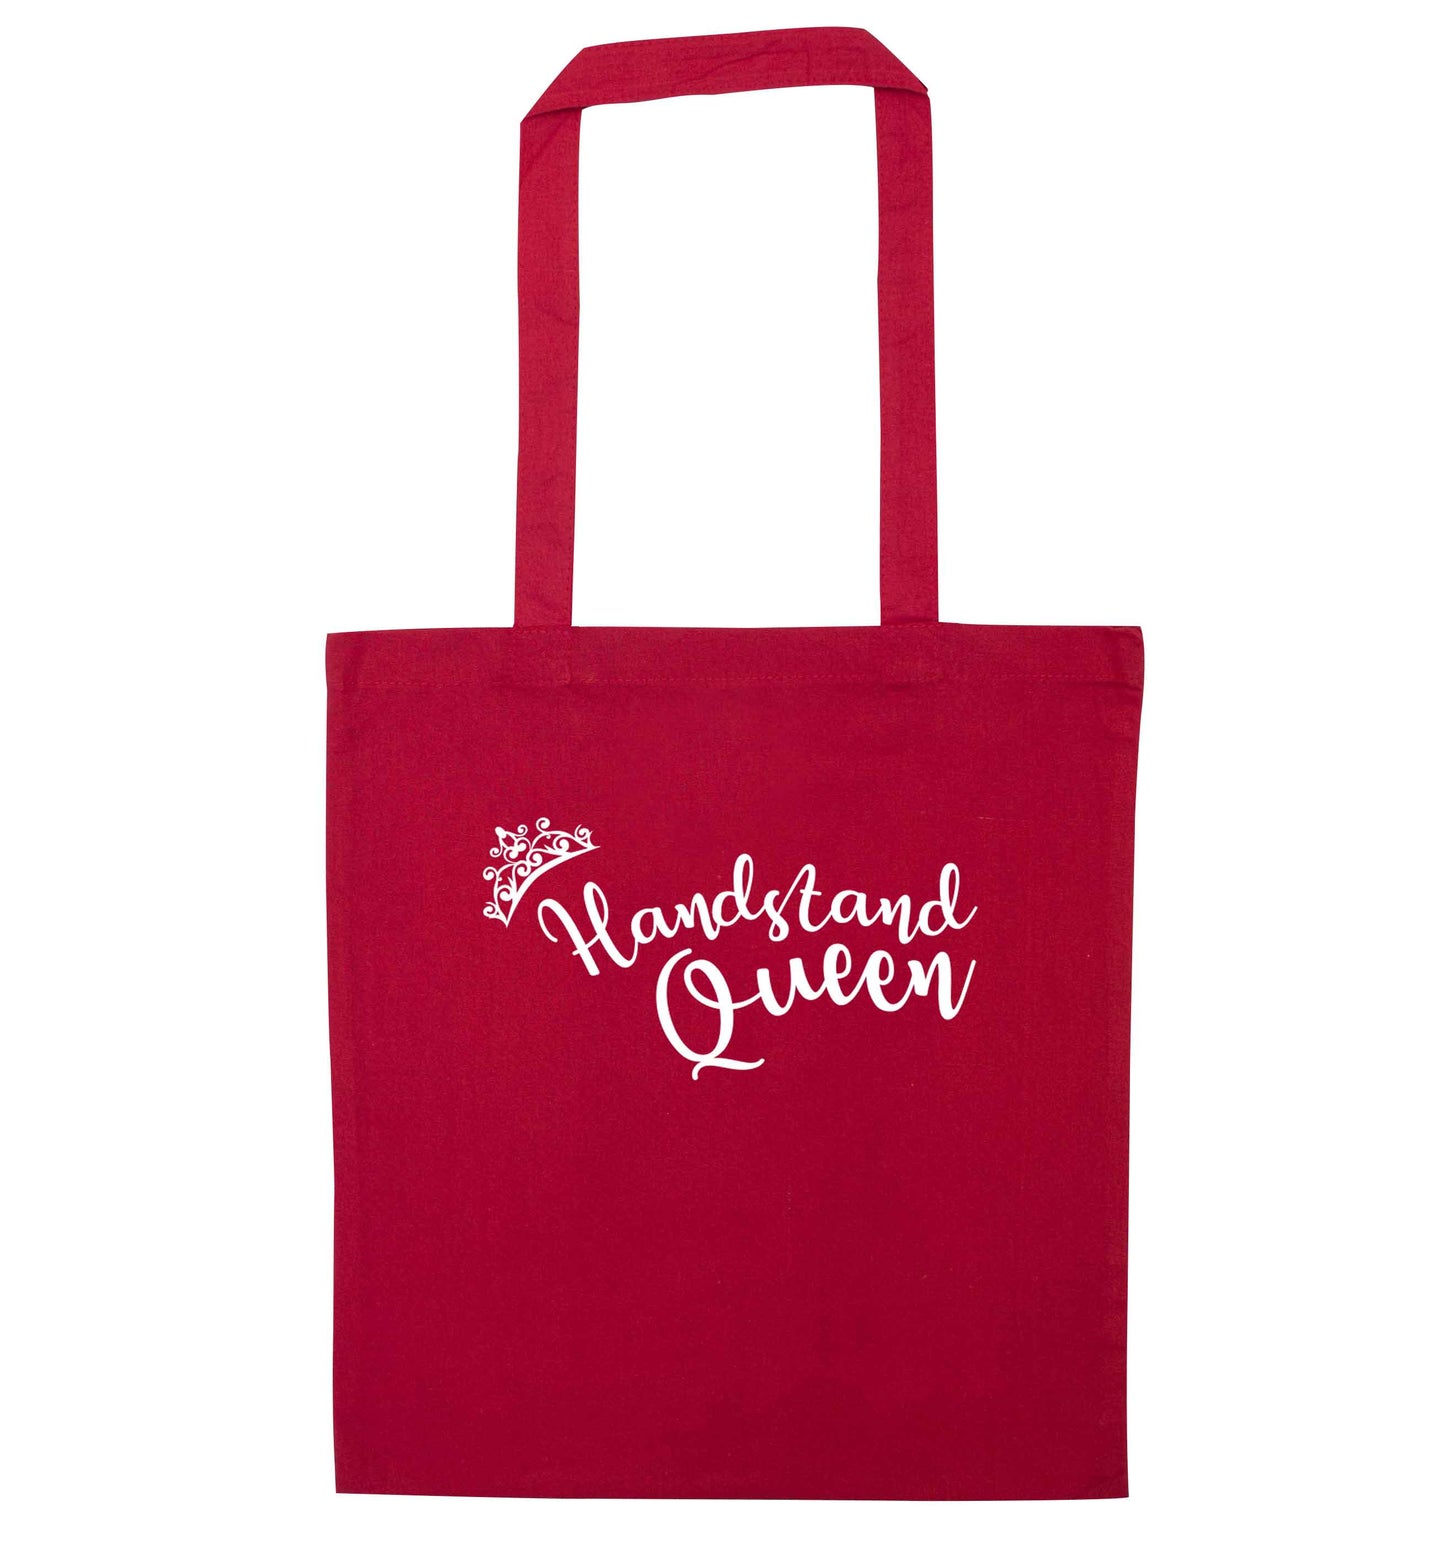 Handstand Queen red tote bag